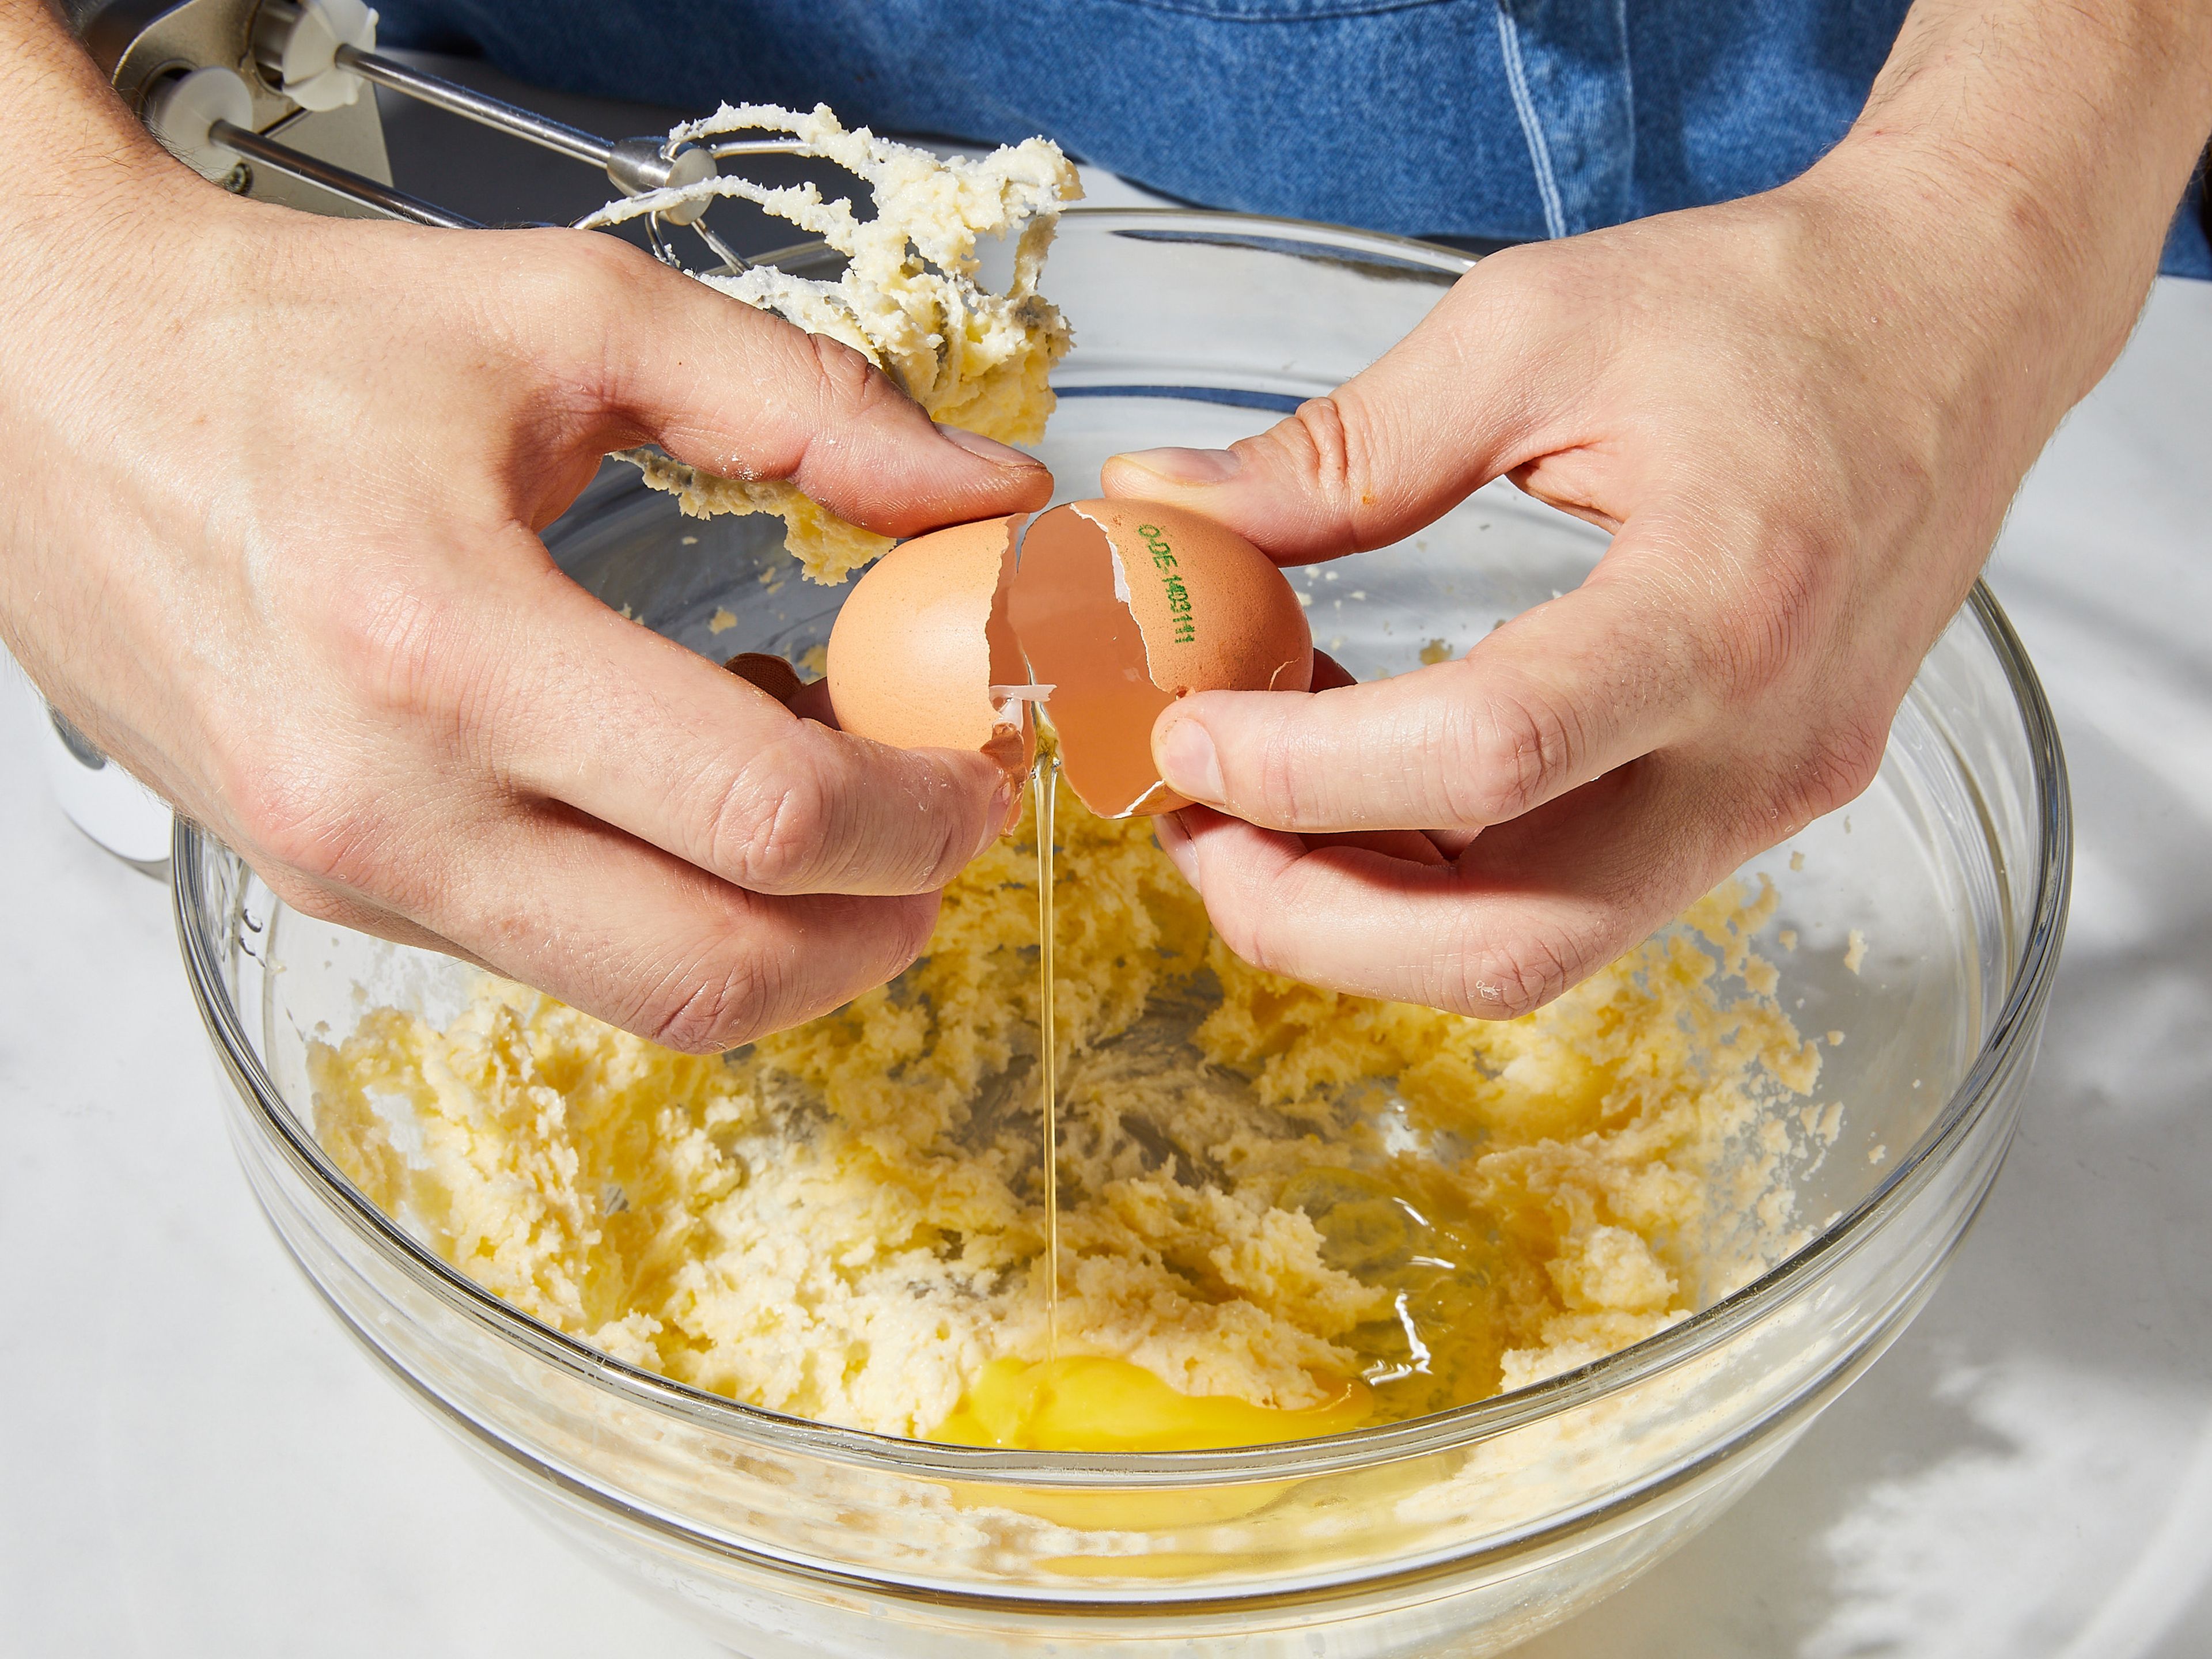 Den Backofen auf 180°C Ober-/Unterhitze vorheizen. Springform einfetten und mit Mehl bestäuben. 1 TL Zitronenschale fein abreiben. In einer großen Schüssel Butter, den größten Teil des Zuckers, eine Prise Salz und die Zitronenschale vermischen und mit einem Handrührgerät oder dem Standmixer auf höchster Stufe mindestens ca. 3 Min. lang schlagen. Nach und nach die Eier hinzugeben und weiterschlagen. Dann Mehl und Backpulver hinzugeben und alles zu einem glatten und klumpenfreien Kuchenteig verrühren.